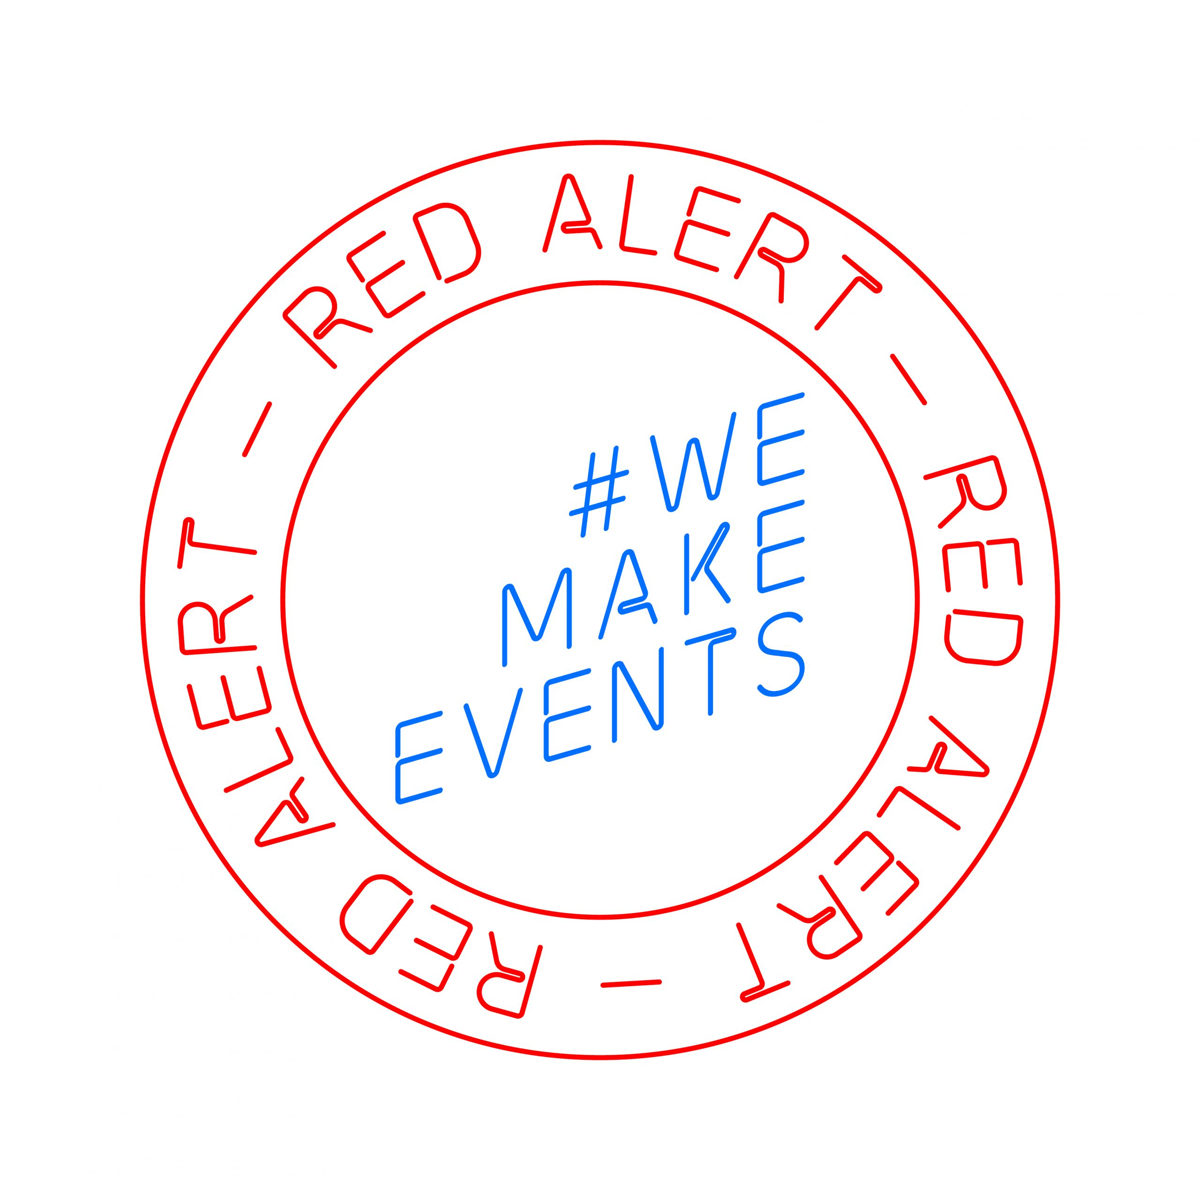 Das RedAlert #WeMakeEvents Emblem ist millionenfach auf Social Media geteilt worden.